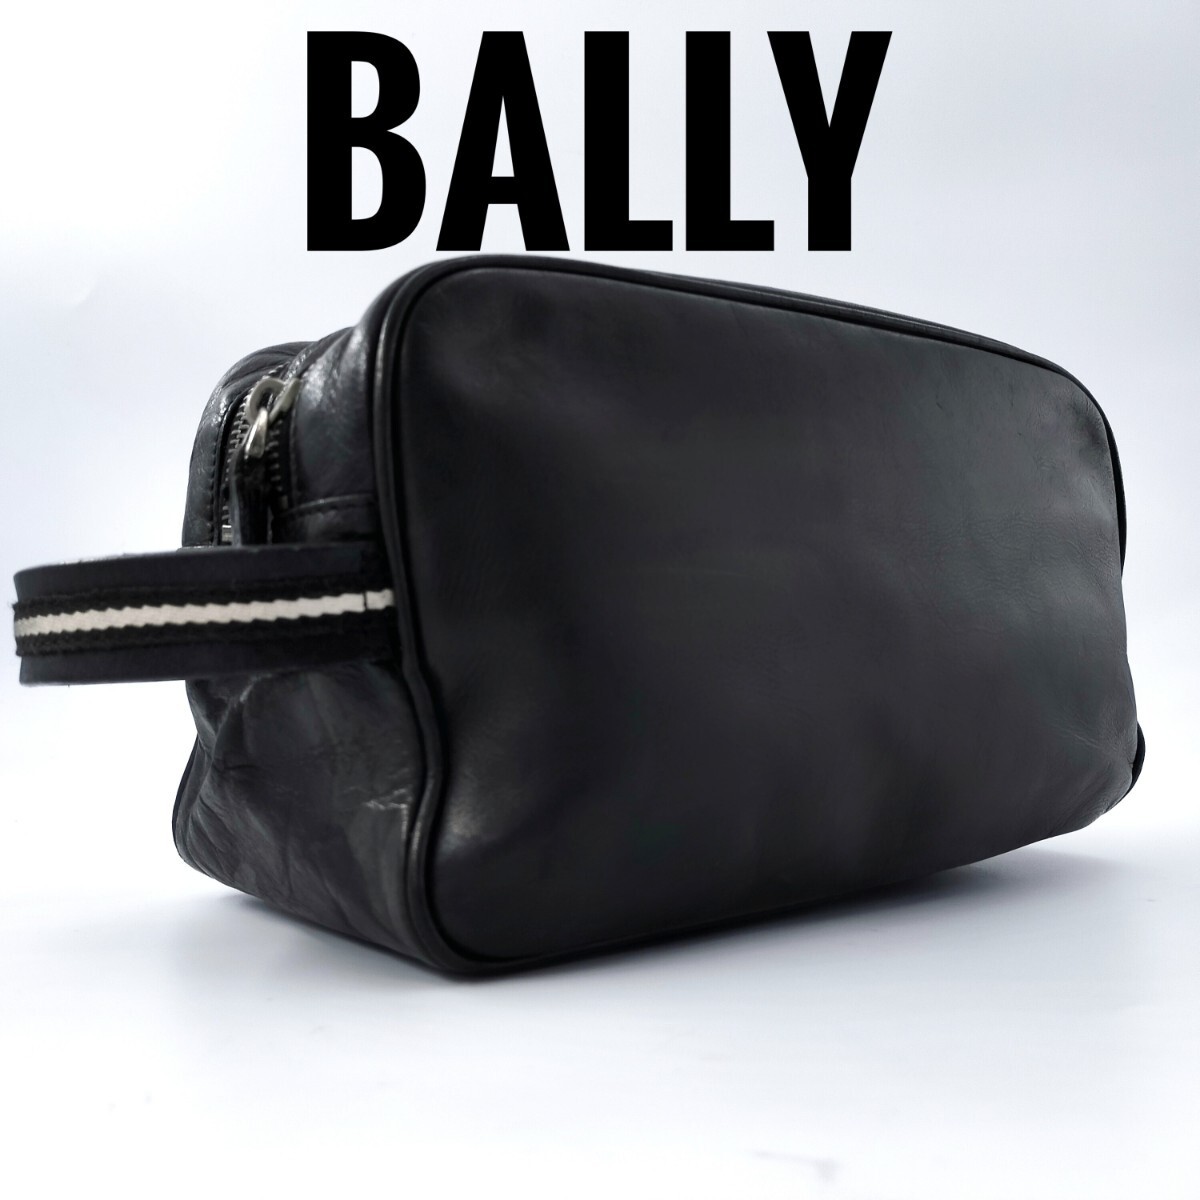 BALLY 1815 バリー メンズ セカンドバッグ ●ダブルジップ 手持ち 鞄 クラッチバッグ ビジネス ●トレスポ レザー 本革 ブラック 黒_画像1